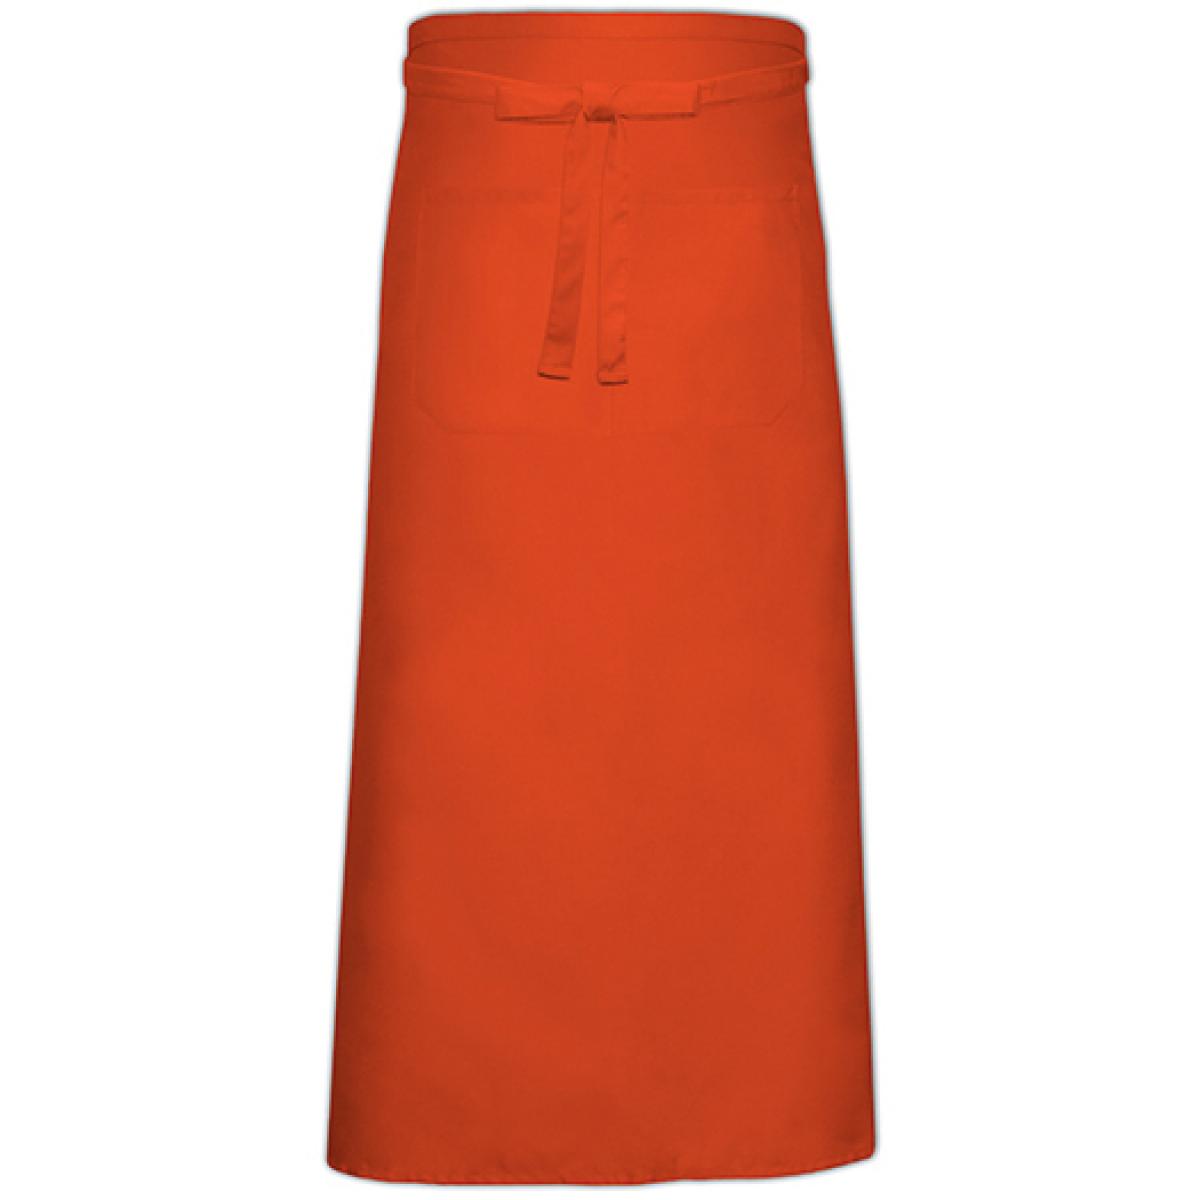 Hersteller: Link Kitchen Wear Herstellernummer: FS100100 Z Artikelbezeichnung: Bistro Apron with Front Pocket - 100 x 100 cm Farbe: Orange